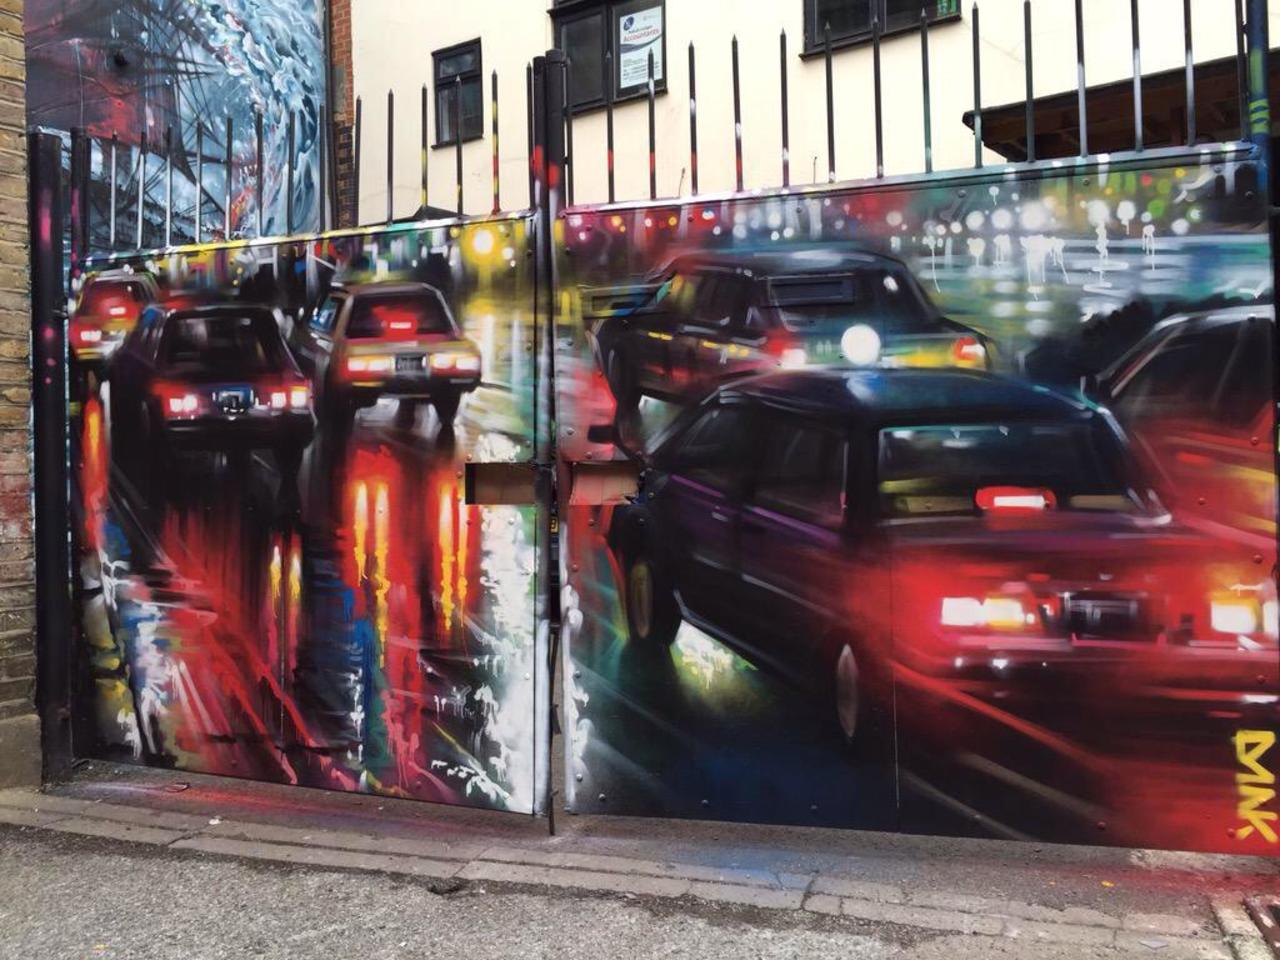 New Street Art by DanKitchener in Brick Lane London 

#art #graffiti #mural #streetart http://t.co/ihfF5TNJAq